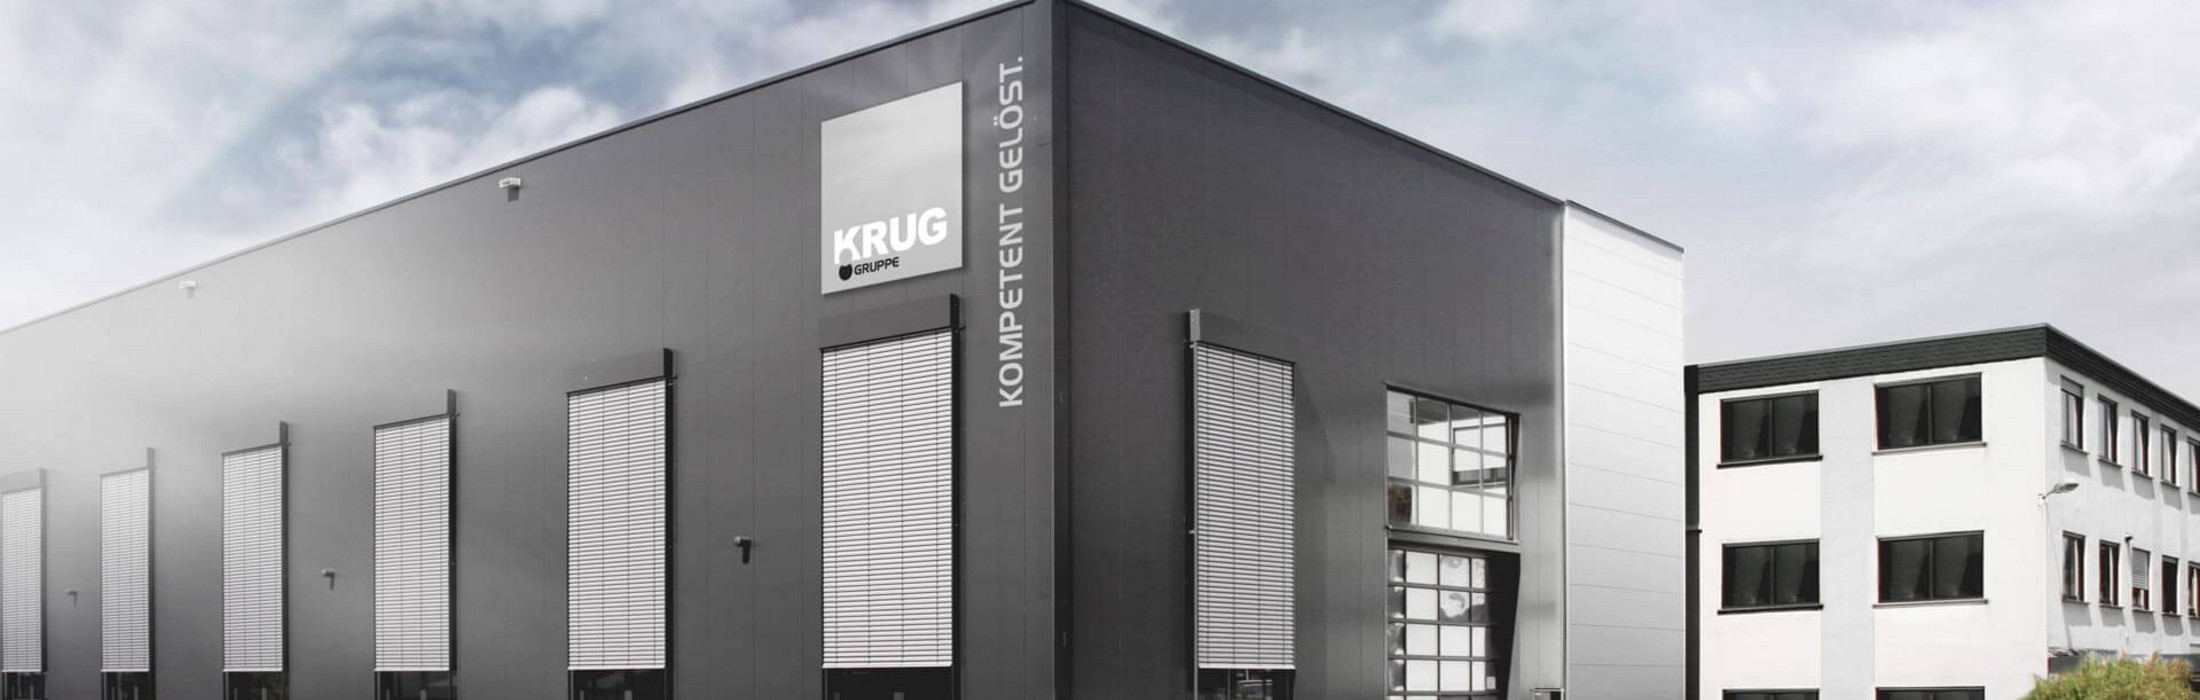 Ein Gebäude auf dem das KRUG-Logo zu sehen ist.